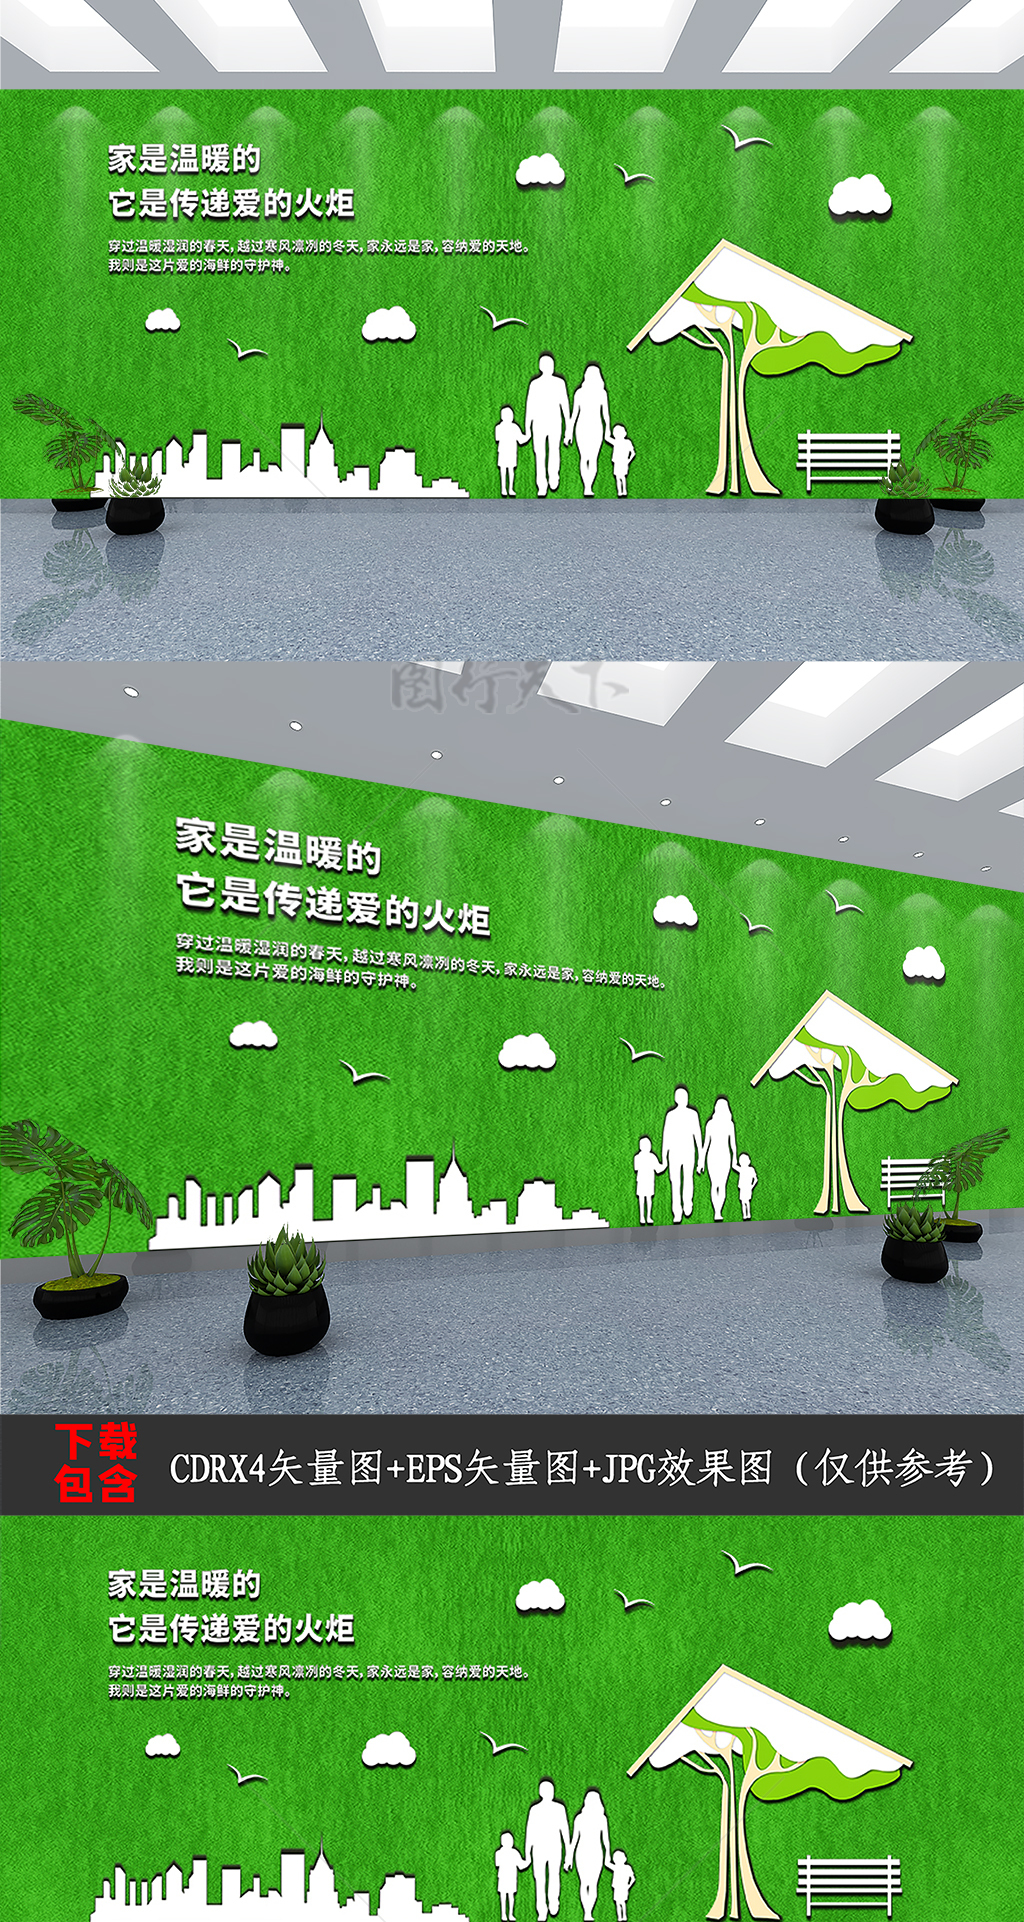 社小区物业地产文化宣传绿植草坪装饰背景墙